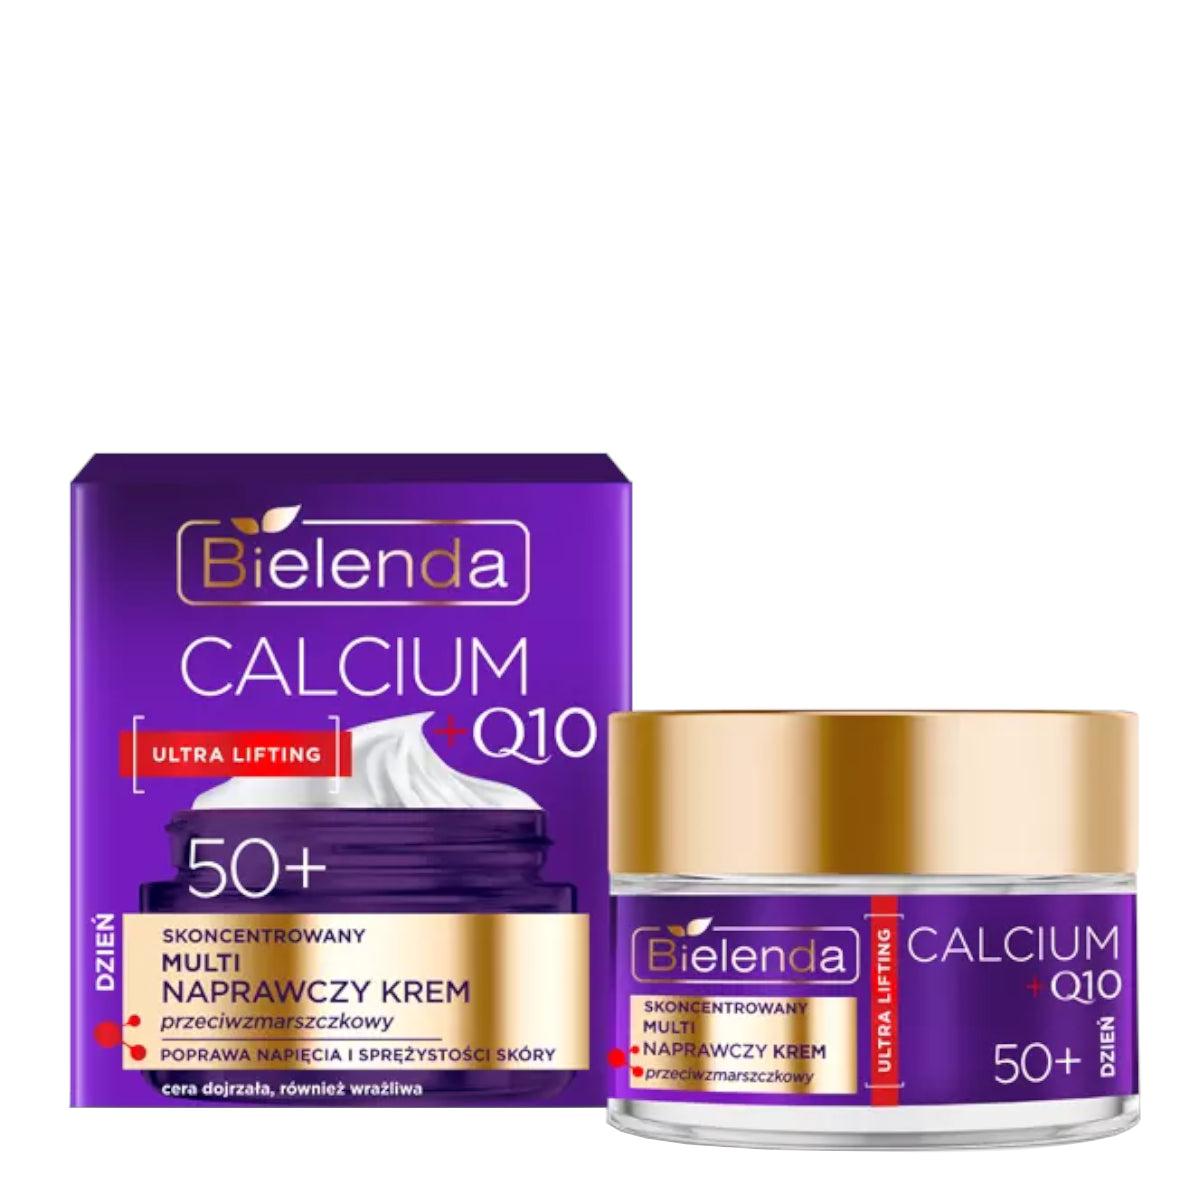 Bielenda Calcium + Q10 Milti Repair Aniti-Wrinkle Day Cream 50+